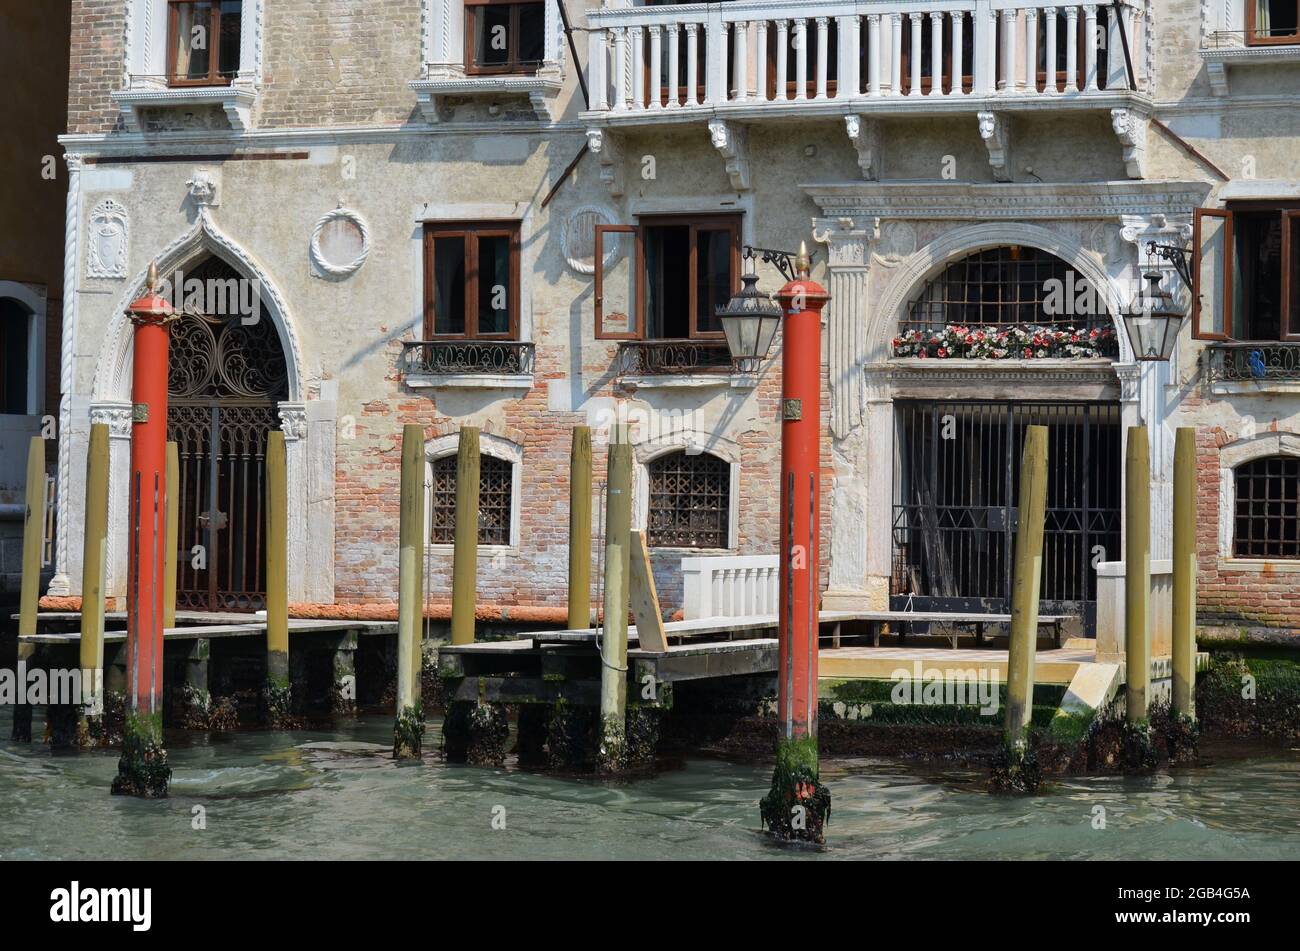 Vedutas des canaux de Venise avec les palais reflétés dans les eaux Banque D'Images